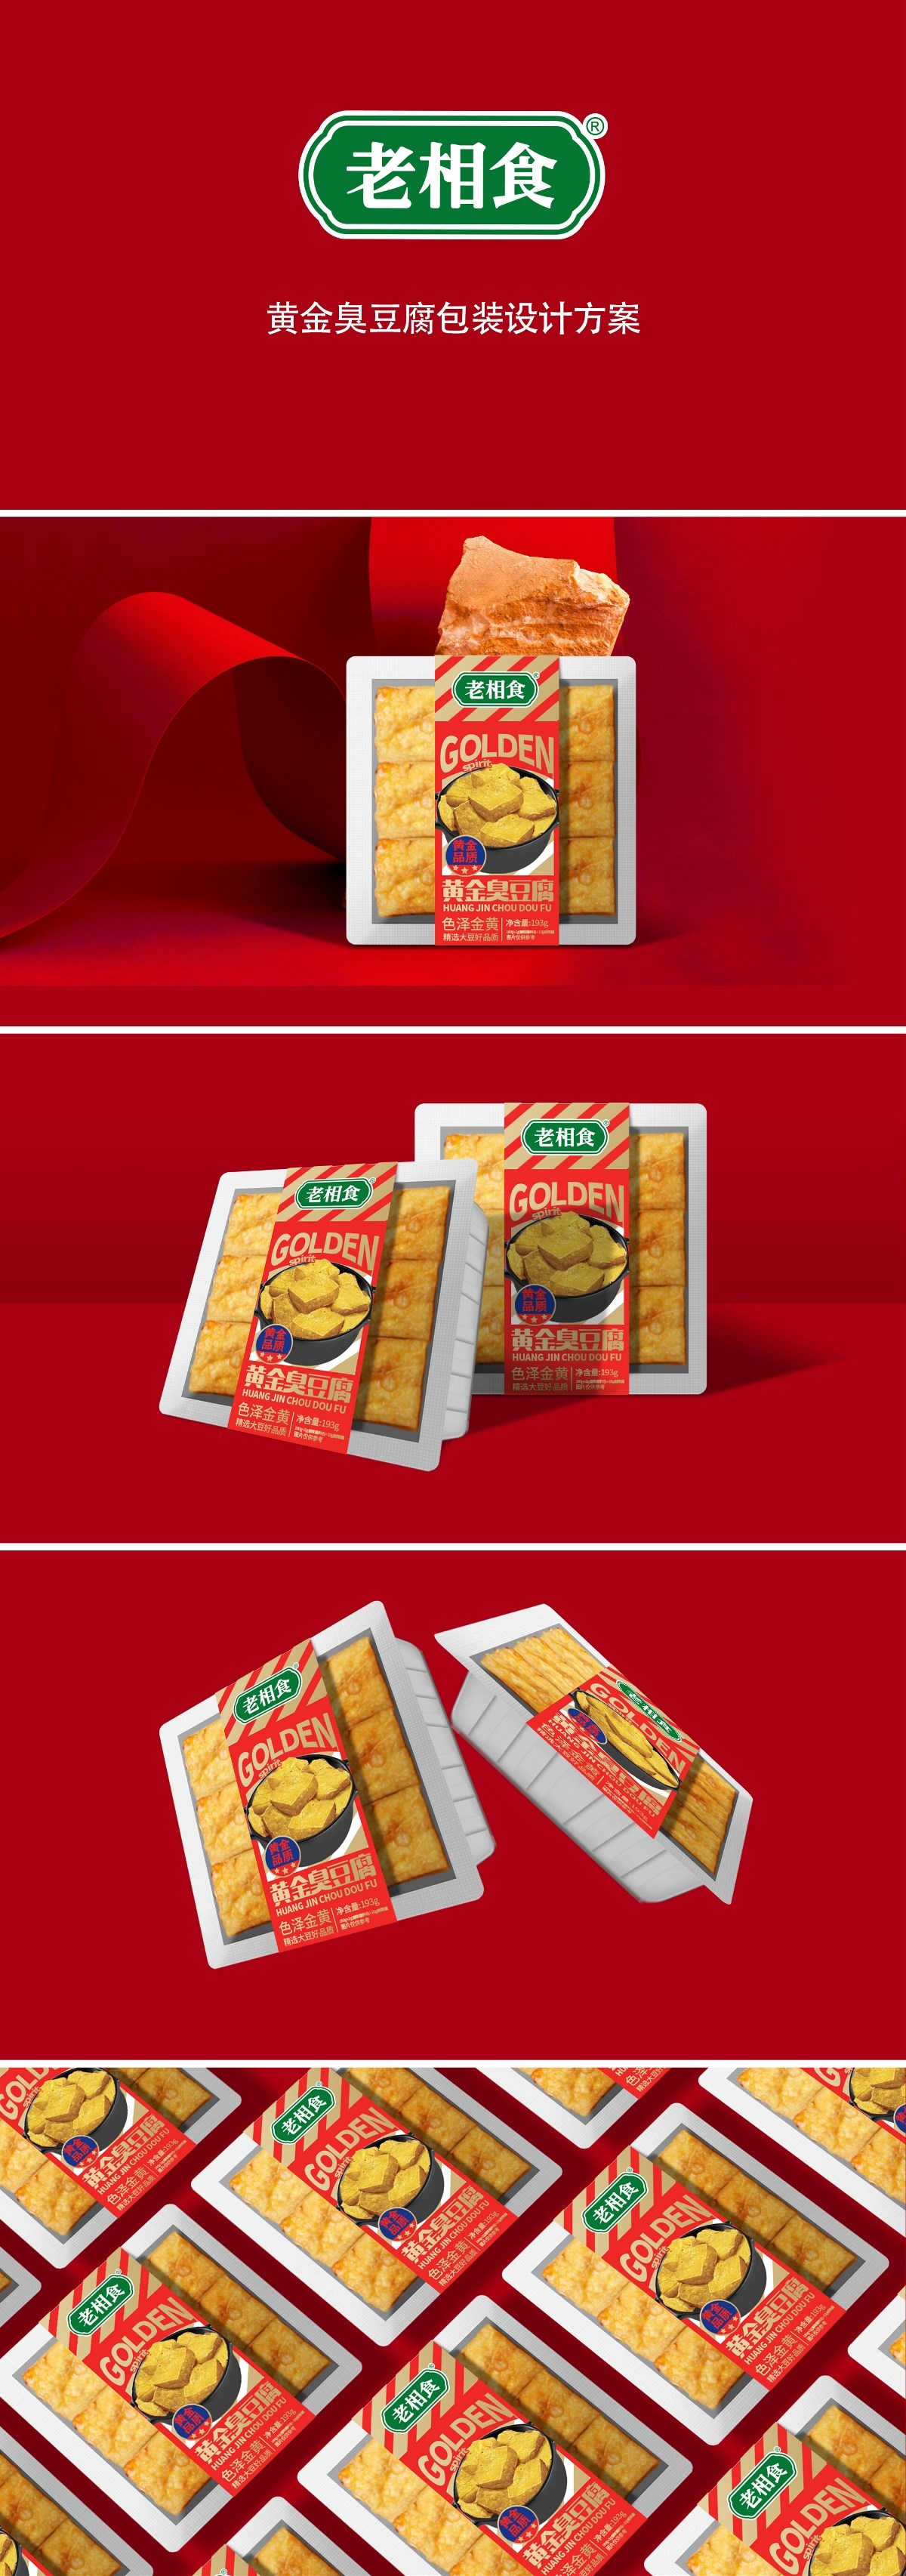 包装设计／品牌／食品包装——老相食臭豆腐包装设计